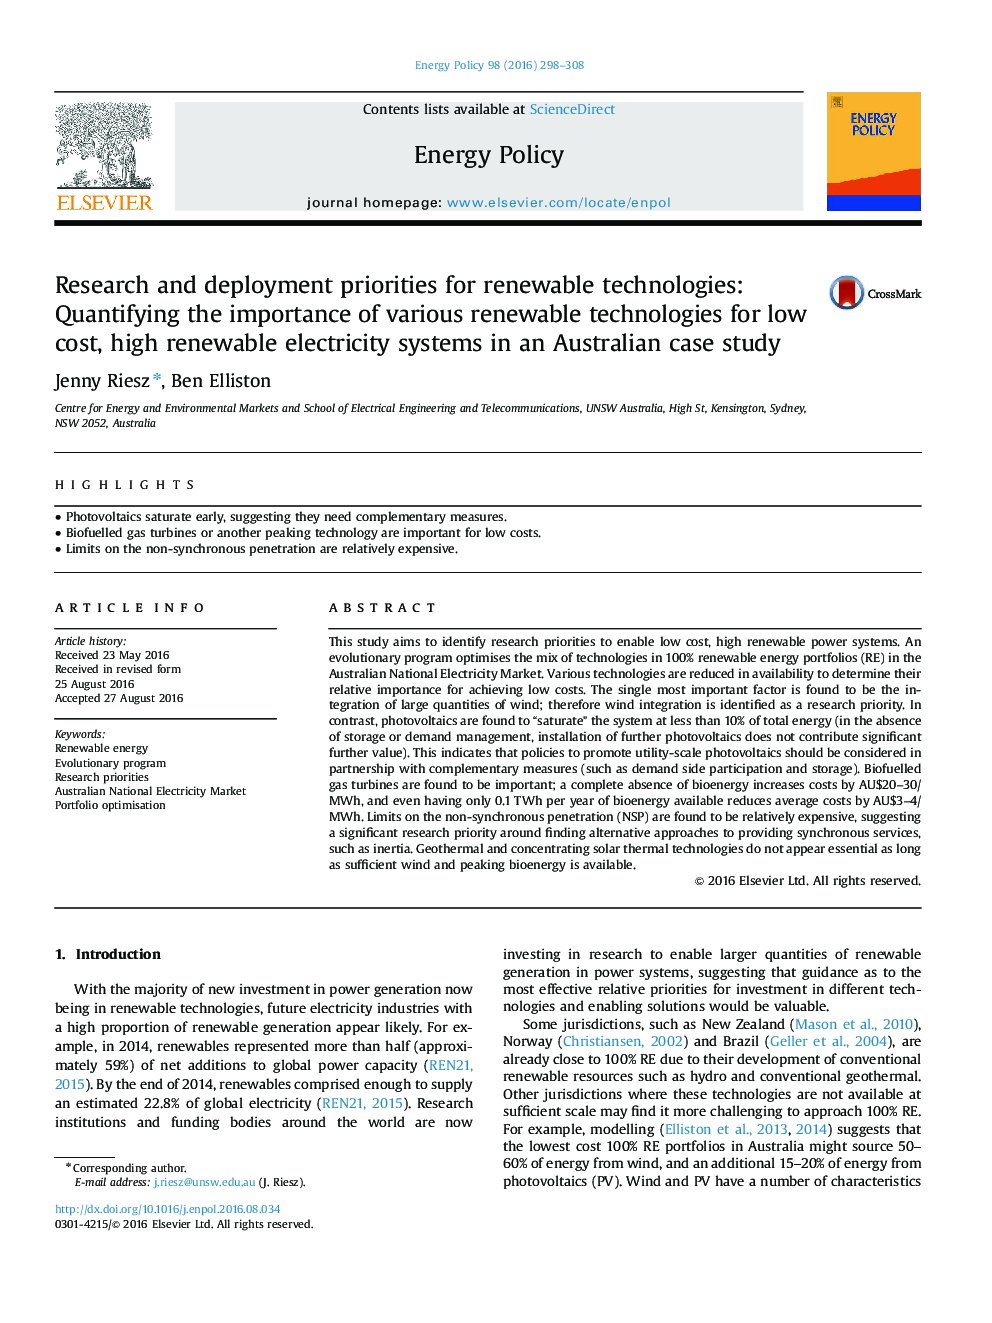 اولویت های تحقیق و توسعۀ فن آوری های تجدید پذیر: تعیین اهمیت فن آوری های مختلف تجدید پذیر برای سیستم های کم هزینه برق و تجدید پذیر در مطالعه مورد استرالیا 